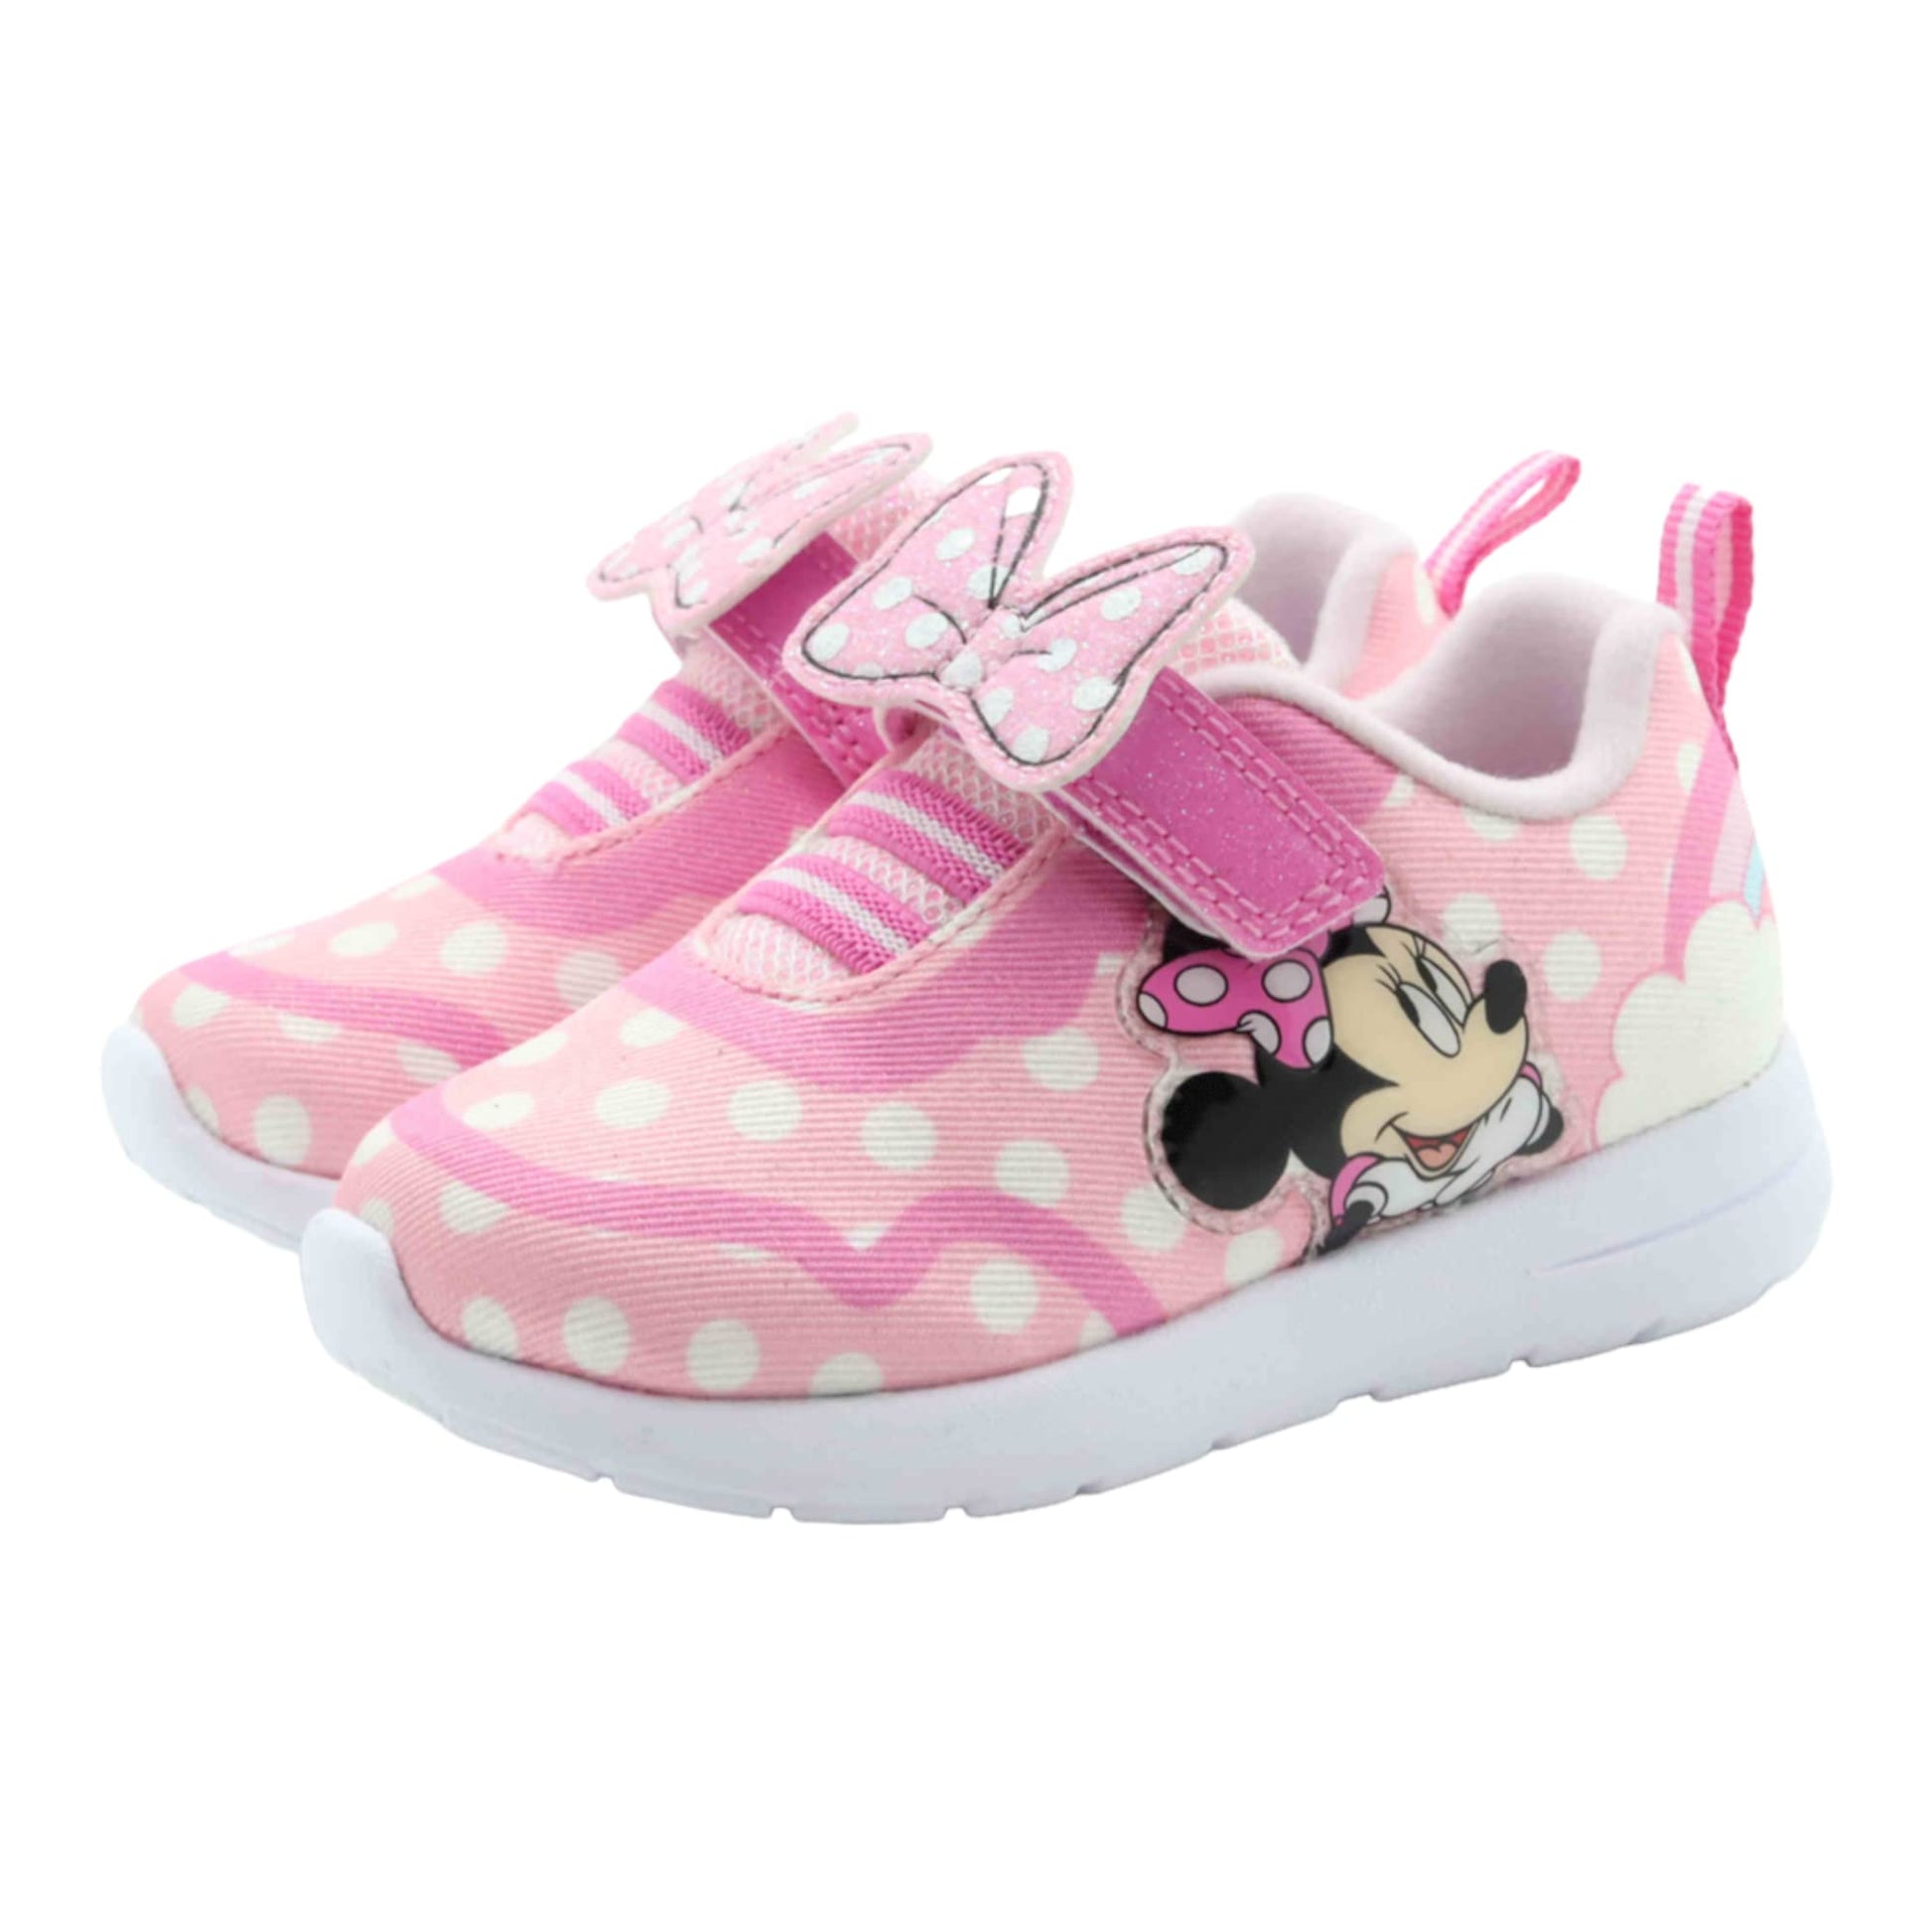 Hot Pink Glitter Tennis Shoes for Girls – Little Bear and Bean Boutique, LLC